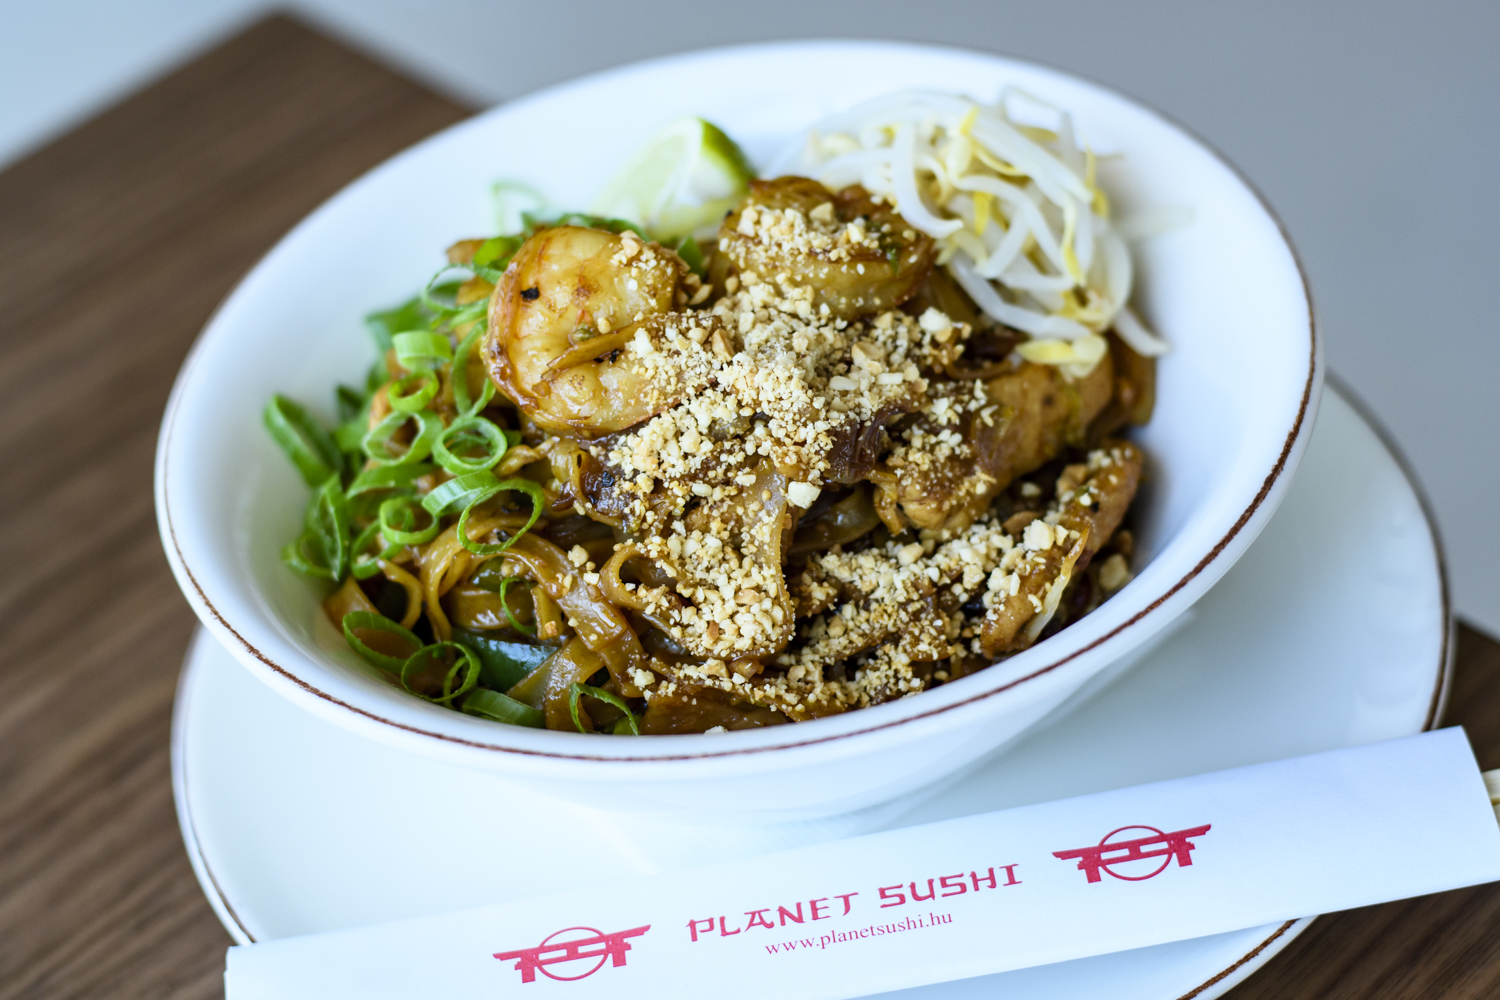 Jó hír az ázsiai konyhát kedvelő budaiaknak: itt is van már Planet Sushi